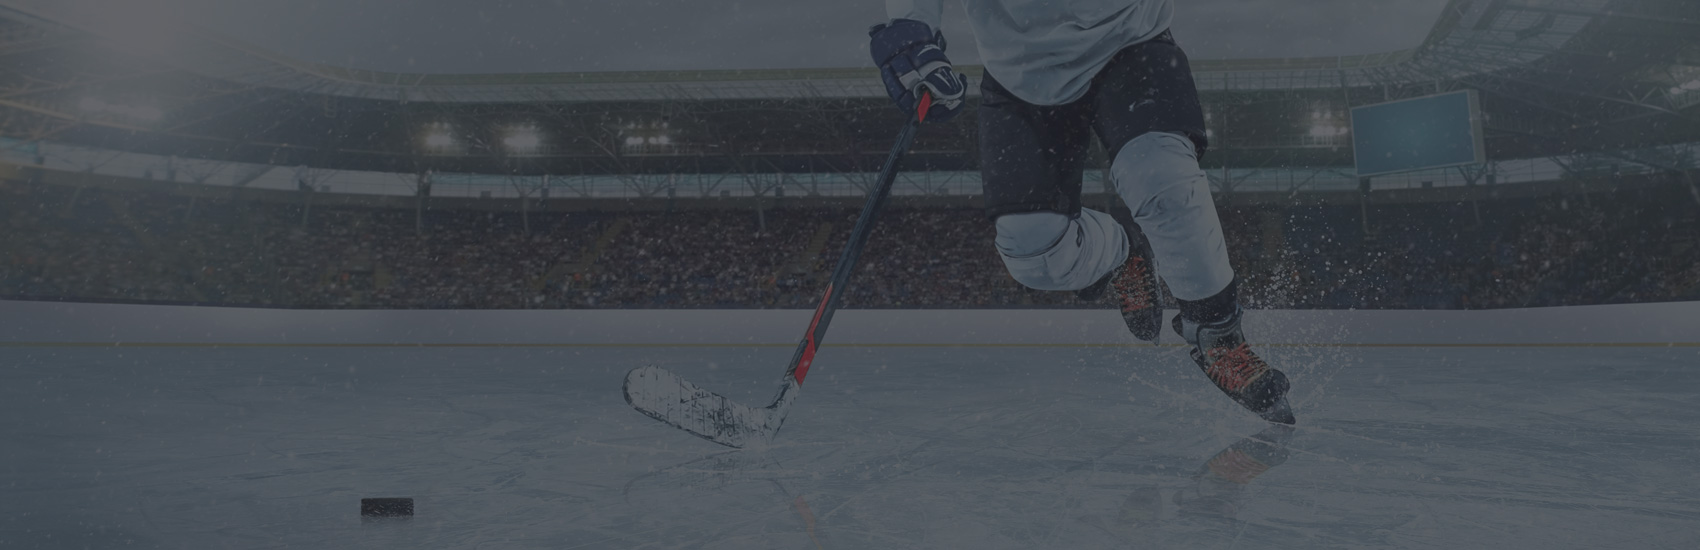 Objectif Équipe Québec pour la hockeyeuse Marianne Brault